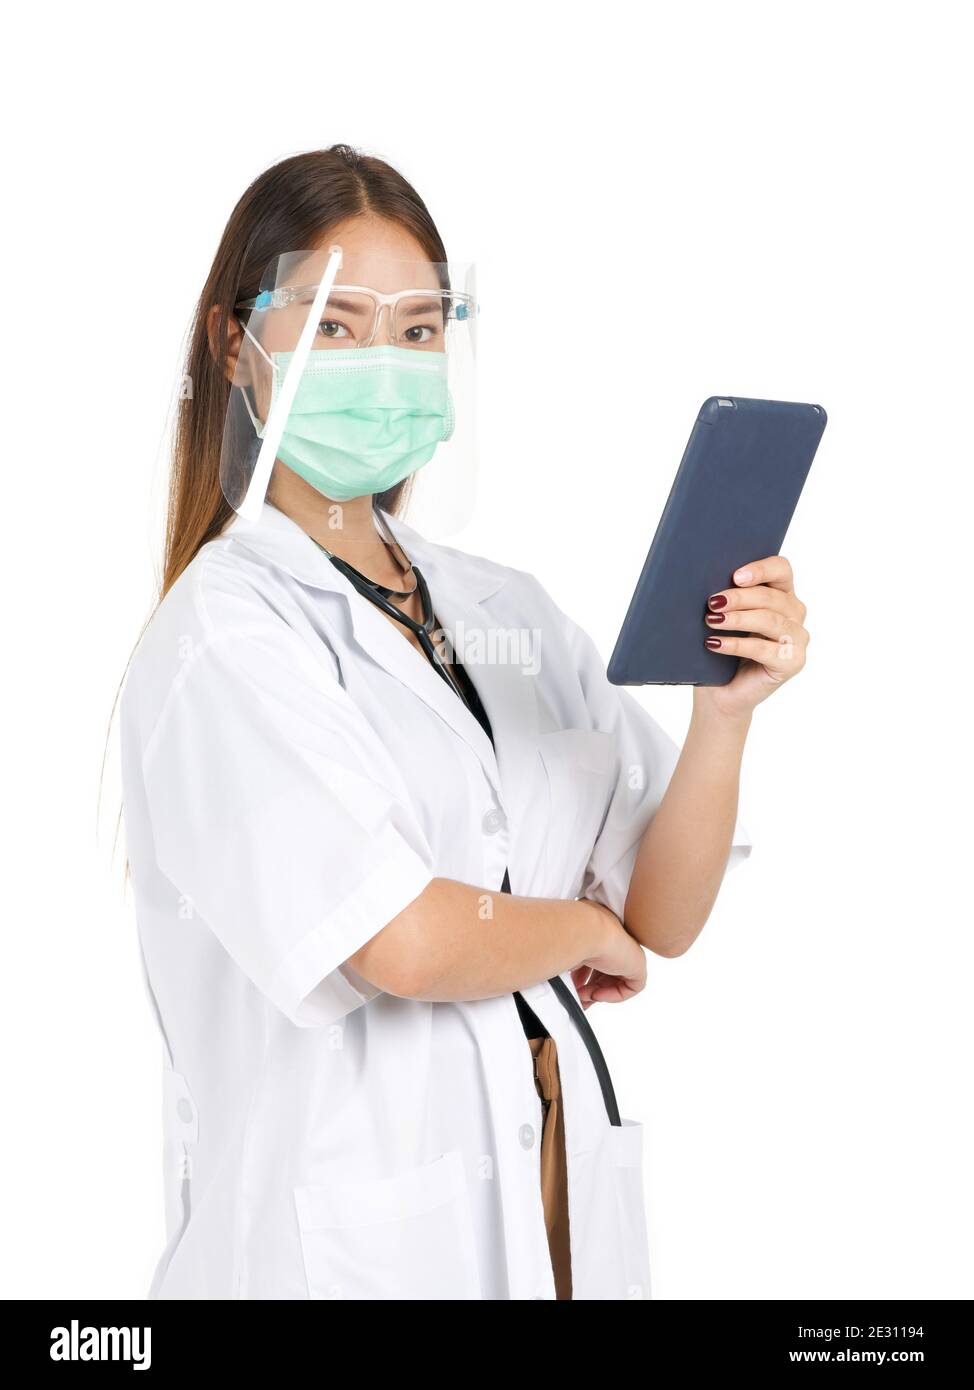 Asiatische Ärztin in Kleid gekleidet, tragen Sie eine Maske und Gesichtsschutz halten einen Tablet-Computer mit einer Hand. Porträt auf weißem Hintergrund mit Studio Lig Stockfoto